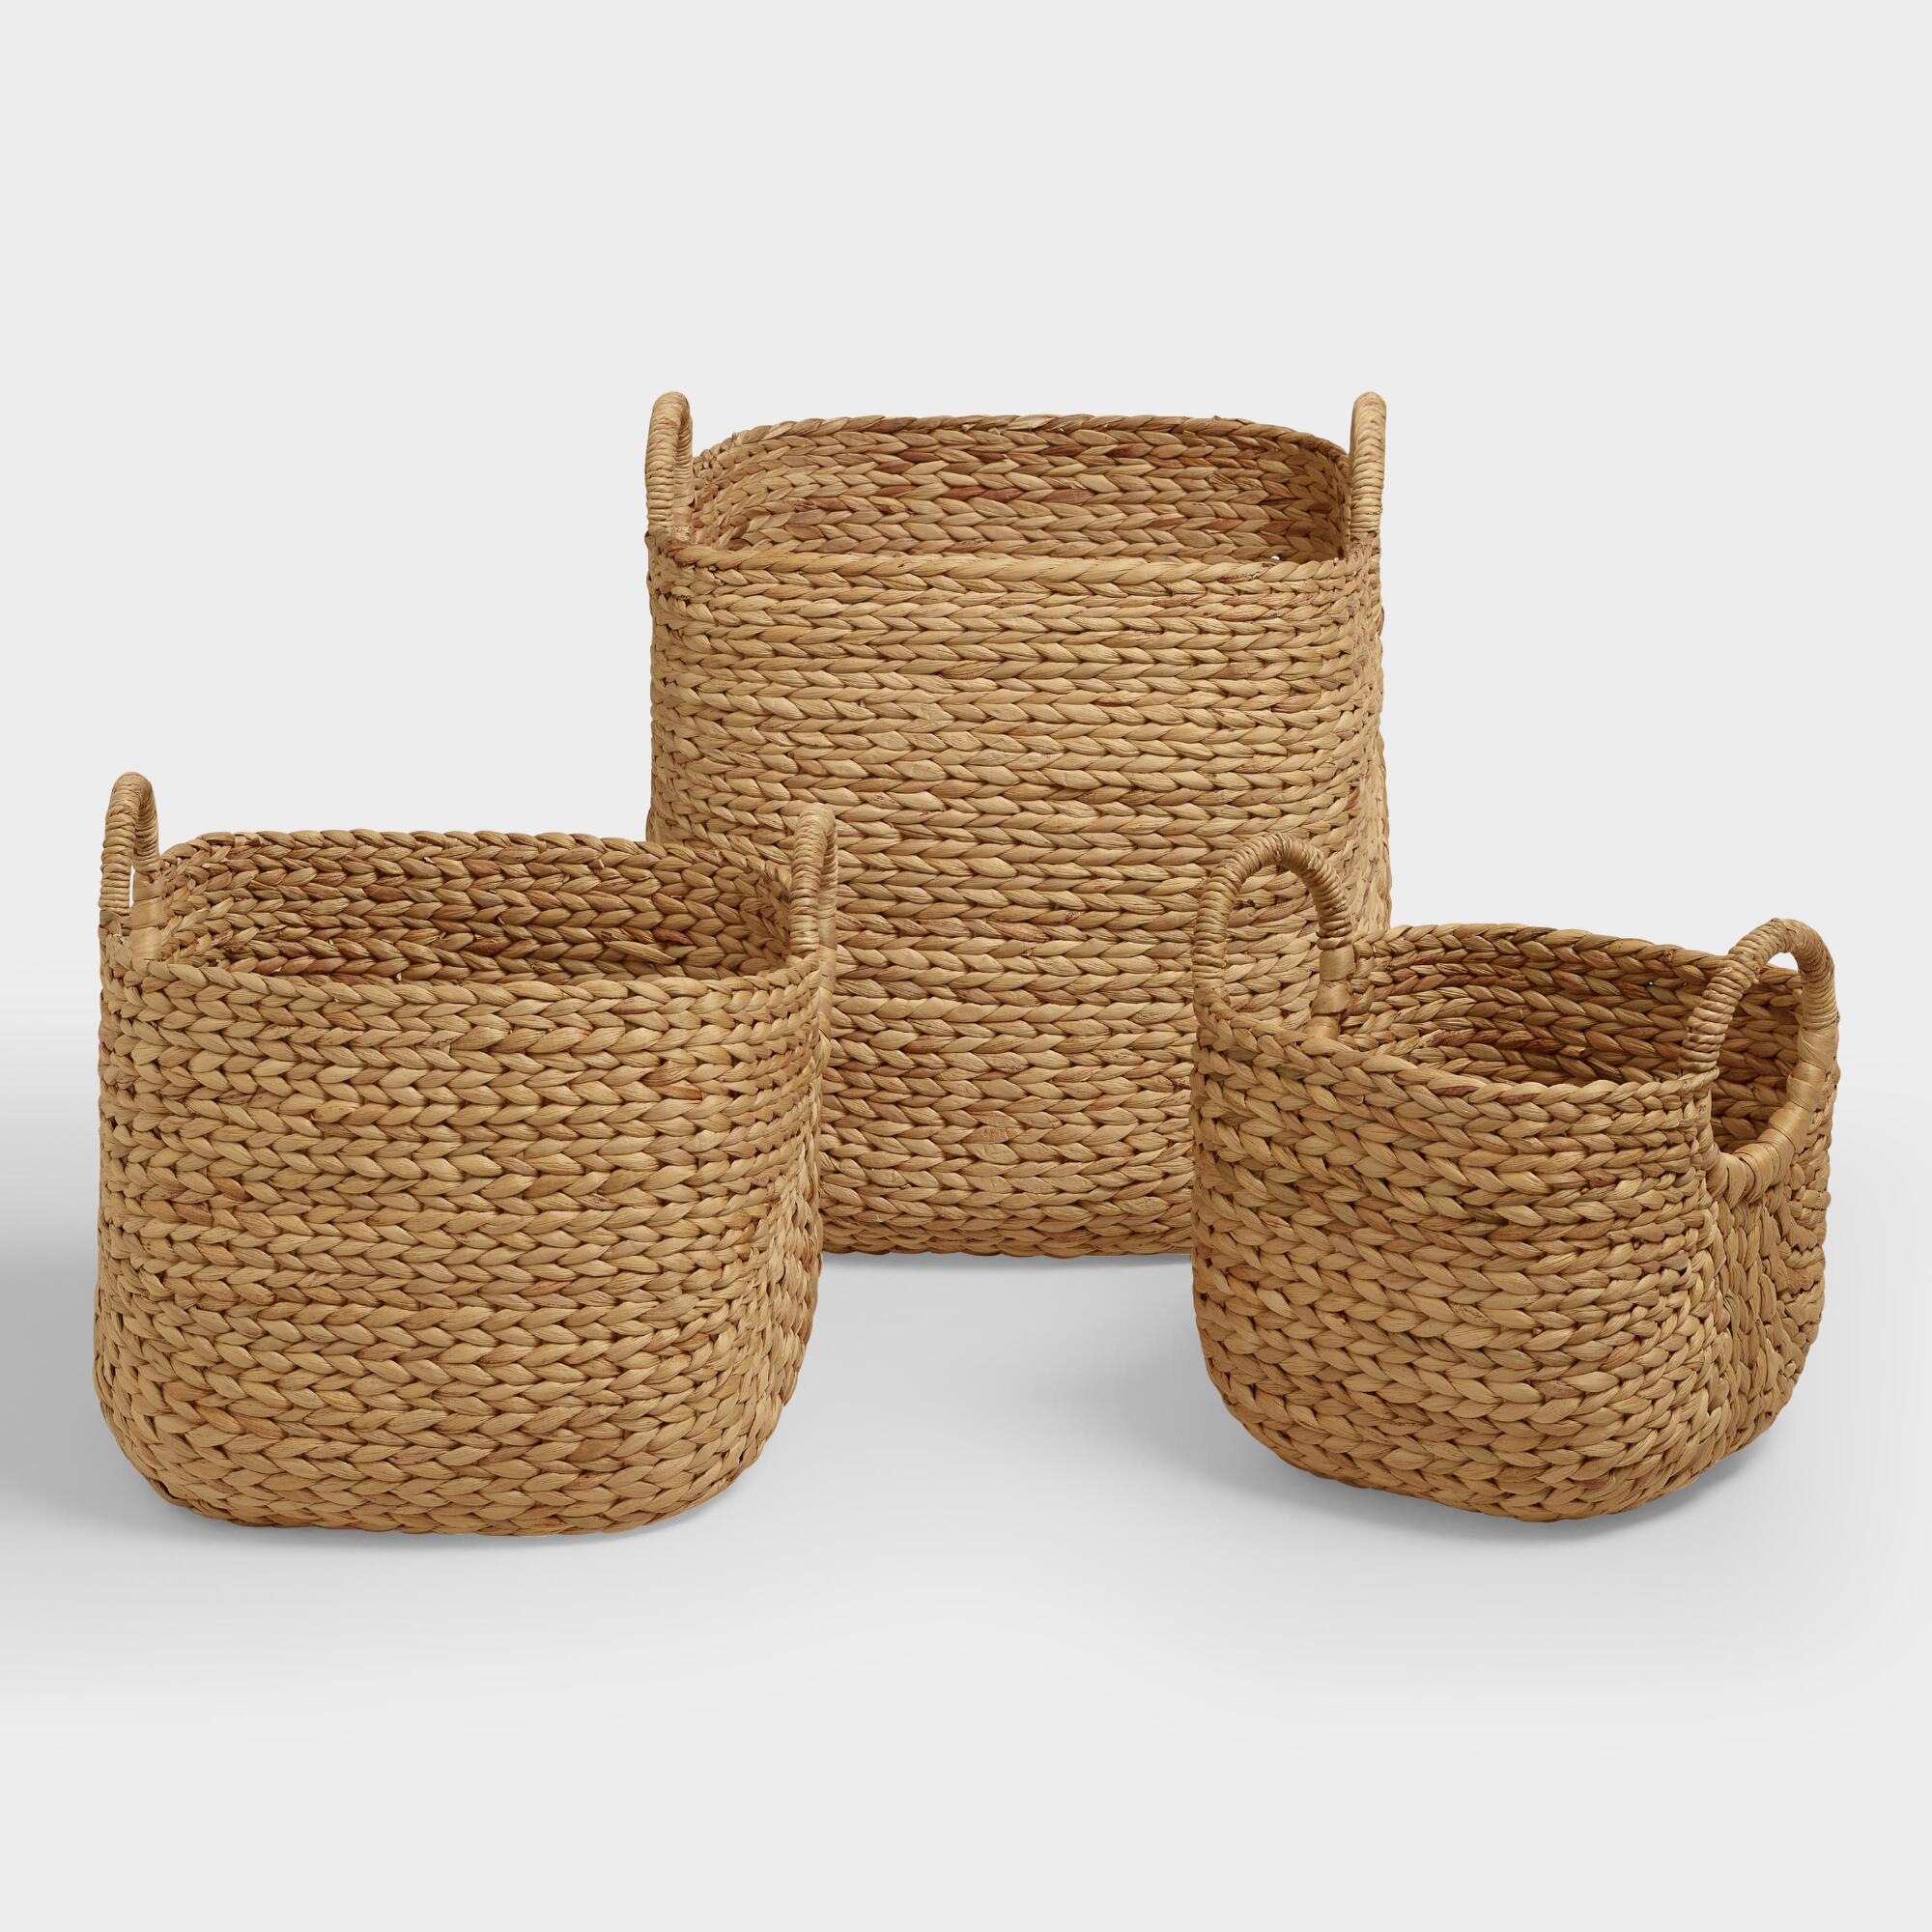 Baskets - Decorative, Storage & Wicker Weave Baskets | World Market